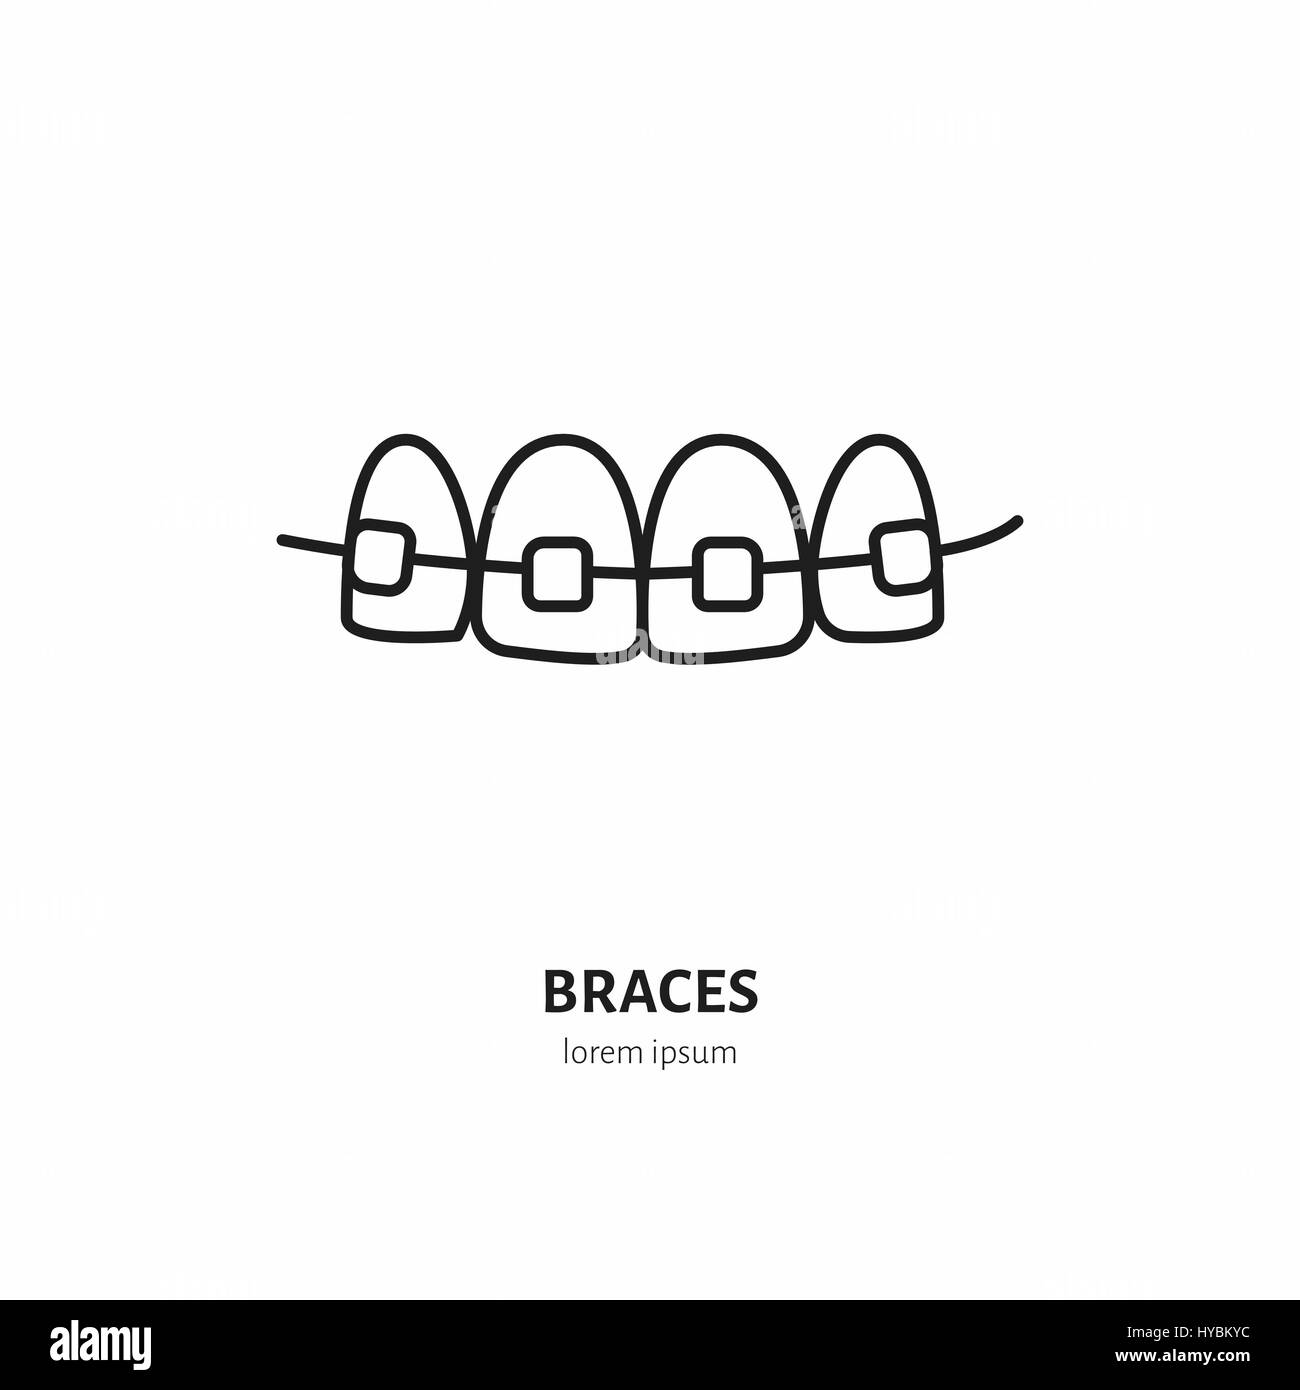 Il dentista ortodonzia icona linea di bretelle, l'allineamento dei denti. La cura dentale segno di apparecchiature mediche, elementi. Health care sottile simbolo lineare per l'odontoiatria Illustrazione Vettoriale